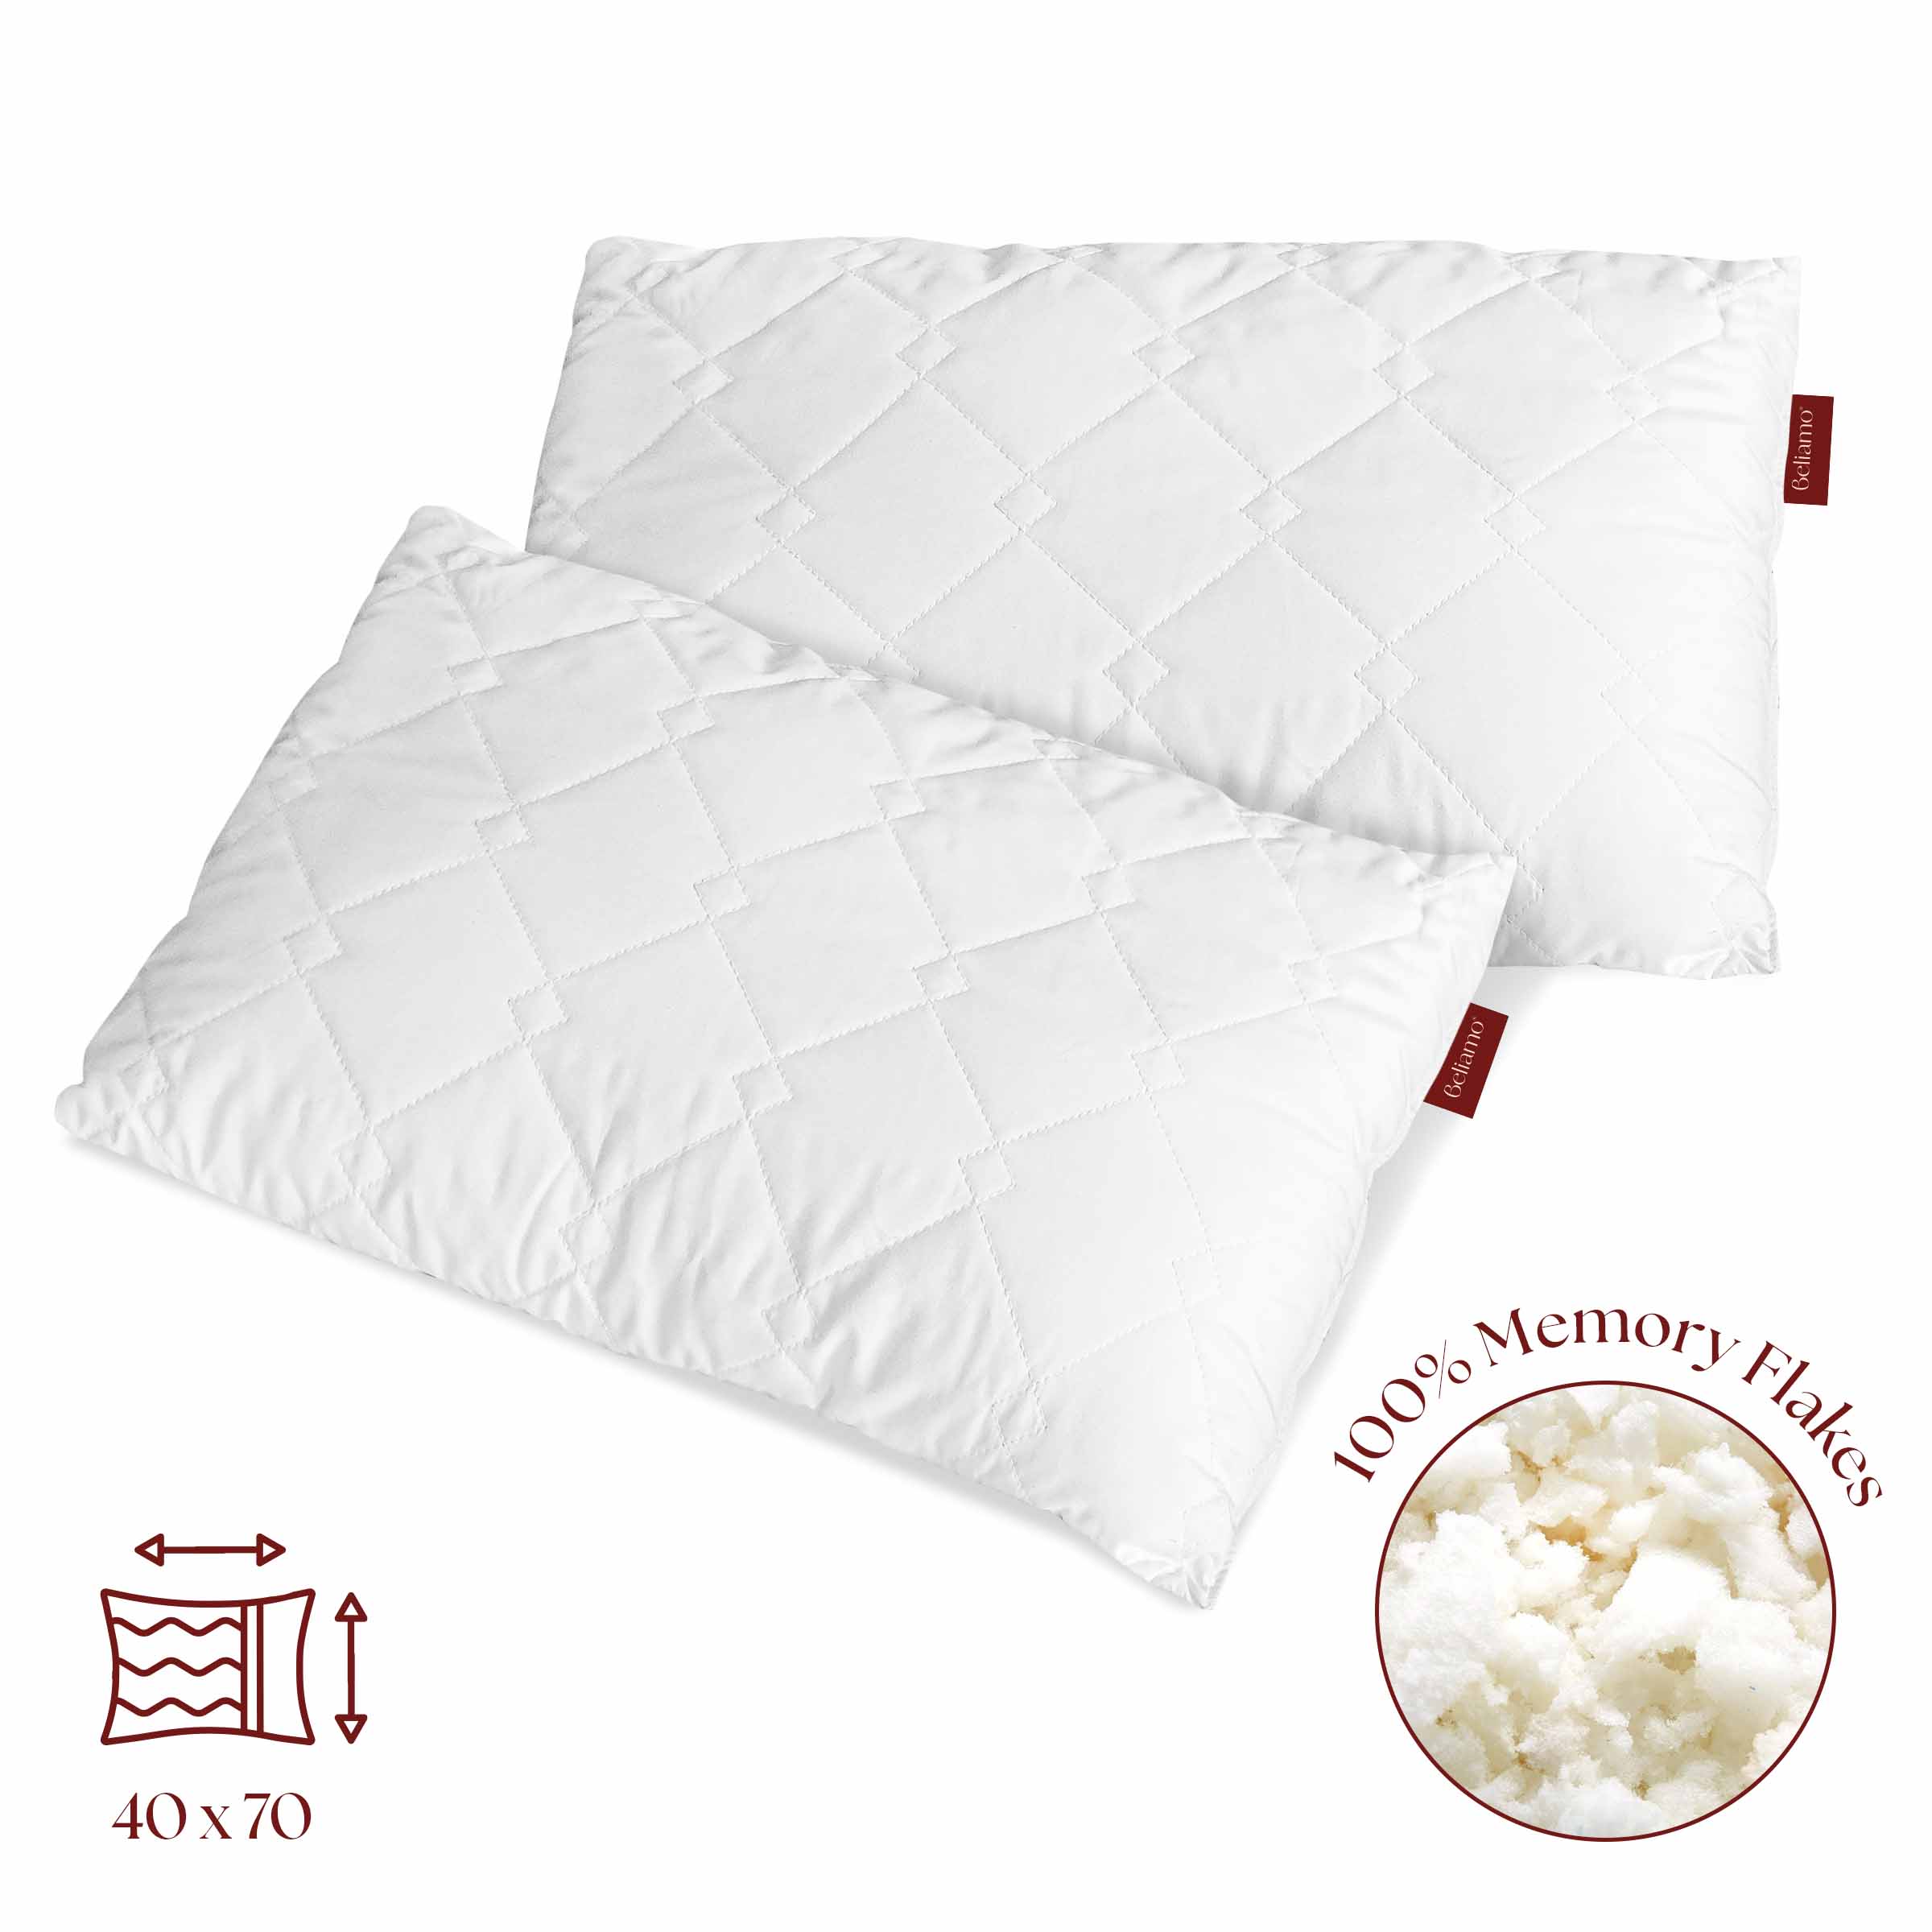 Due cuscini Siena in fiocco di memory foam di Beliamo, pensati per offrire un comfort superiore e un supporto ottimale